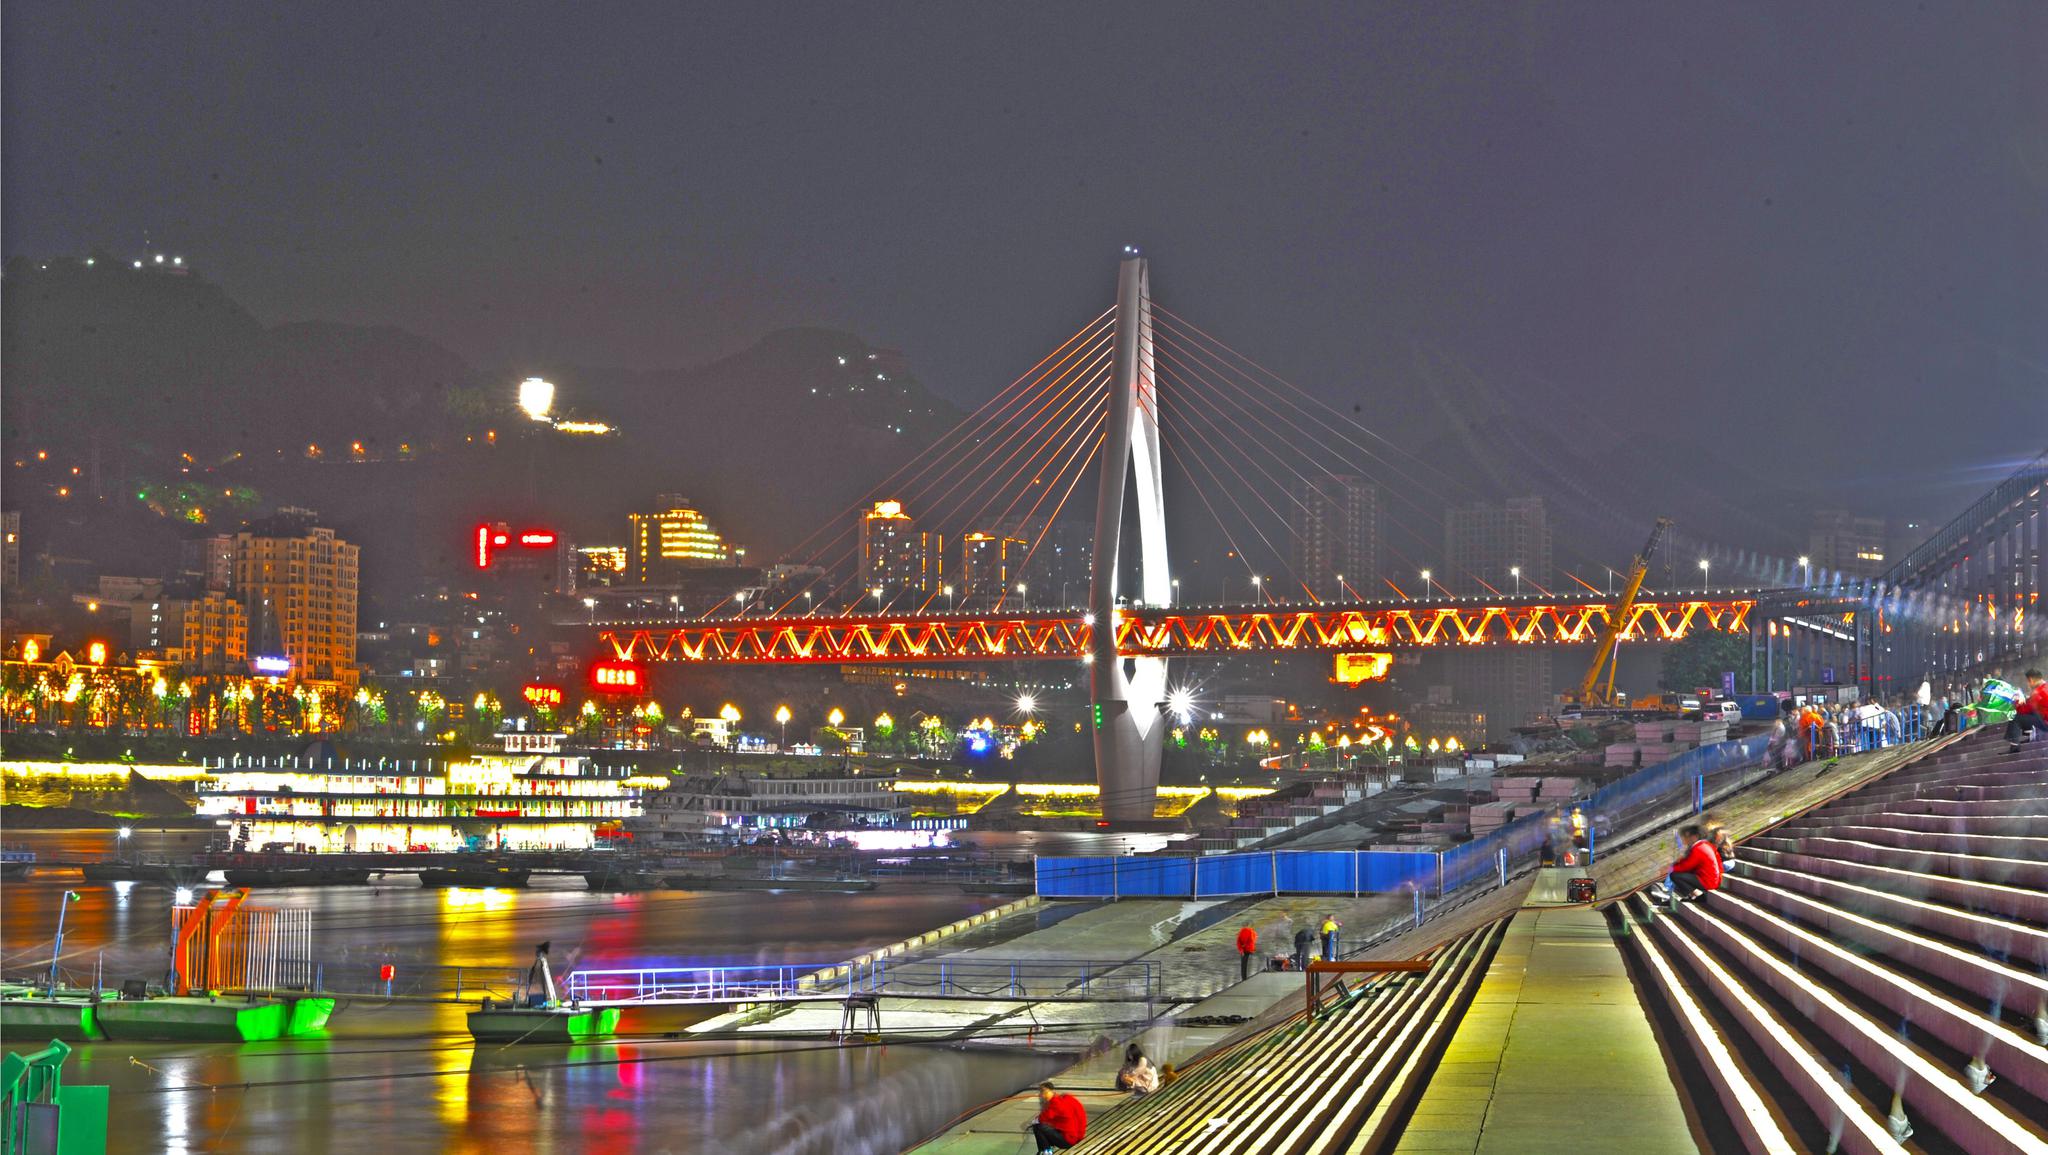 【携程攻略】重庆朝天门广场景点,朝天门码头是重庆的标志景点和必游之地，夜景尤为漂亮。但由于朝天门…